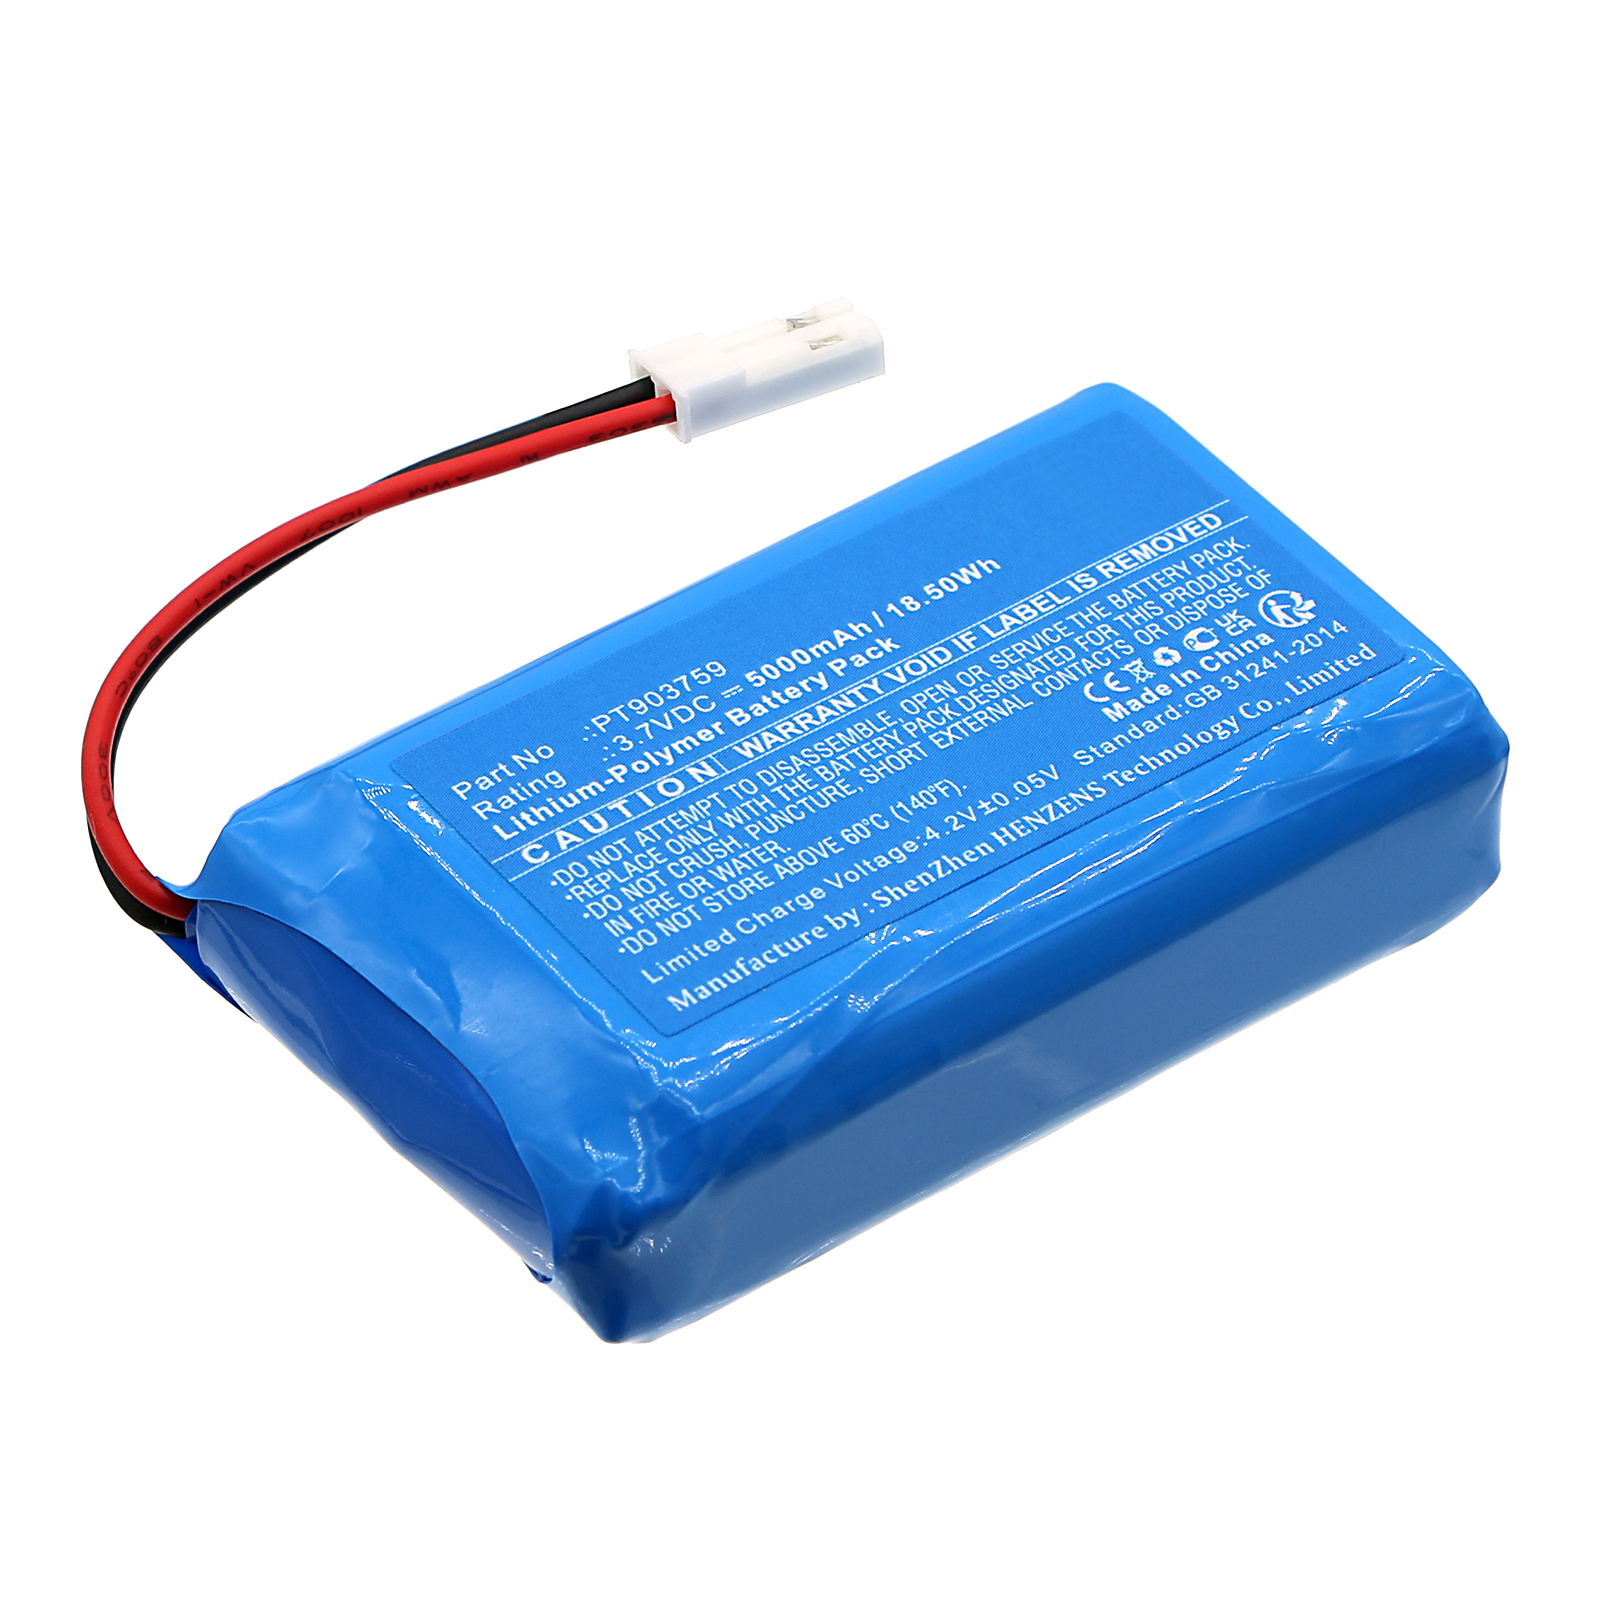 Synergy Digital Equipment Battery, Compatible with Triplett PT903759 Equipment Battery (Li-Pol, 3.7V, 5000mAh)